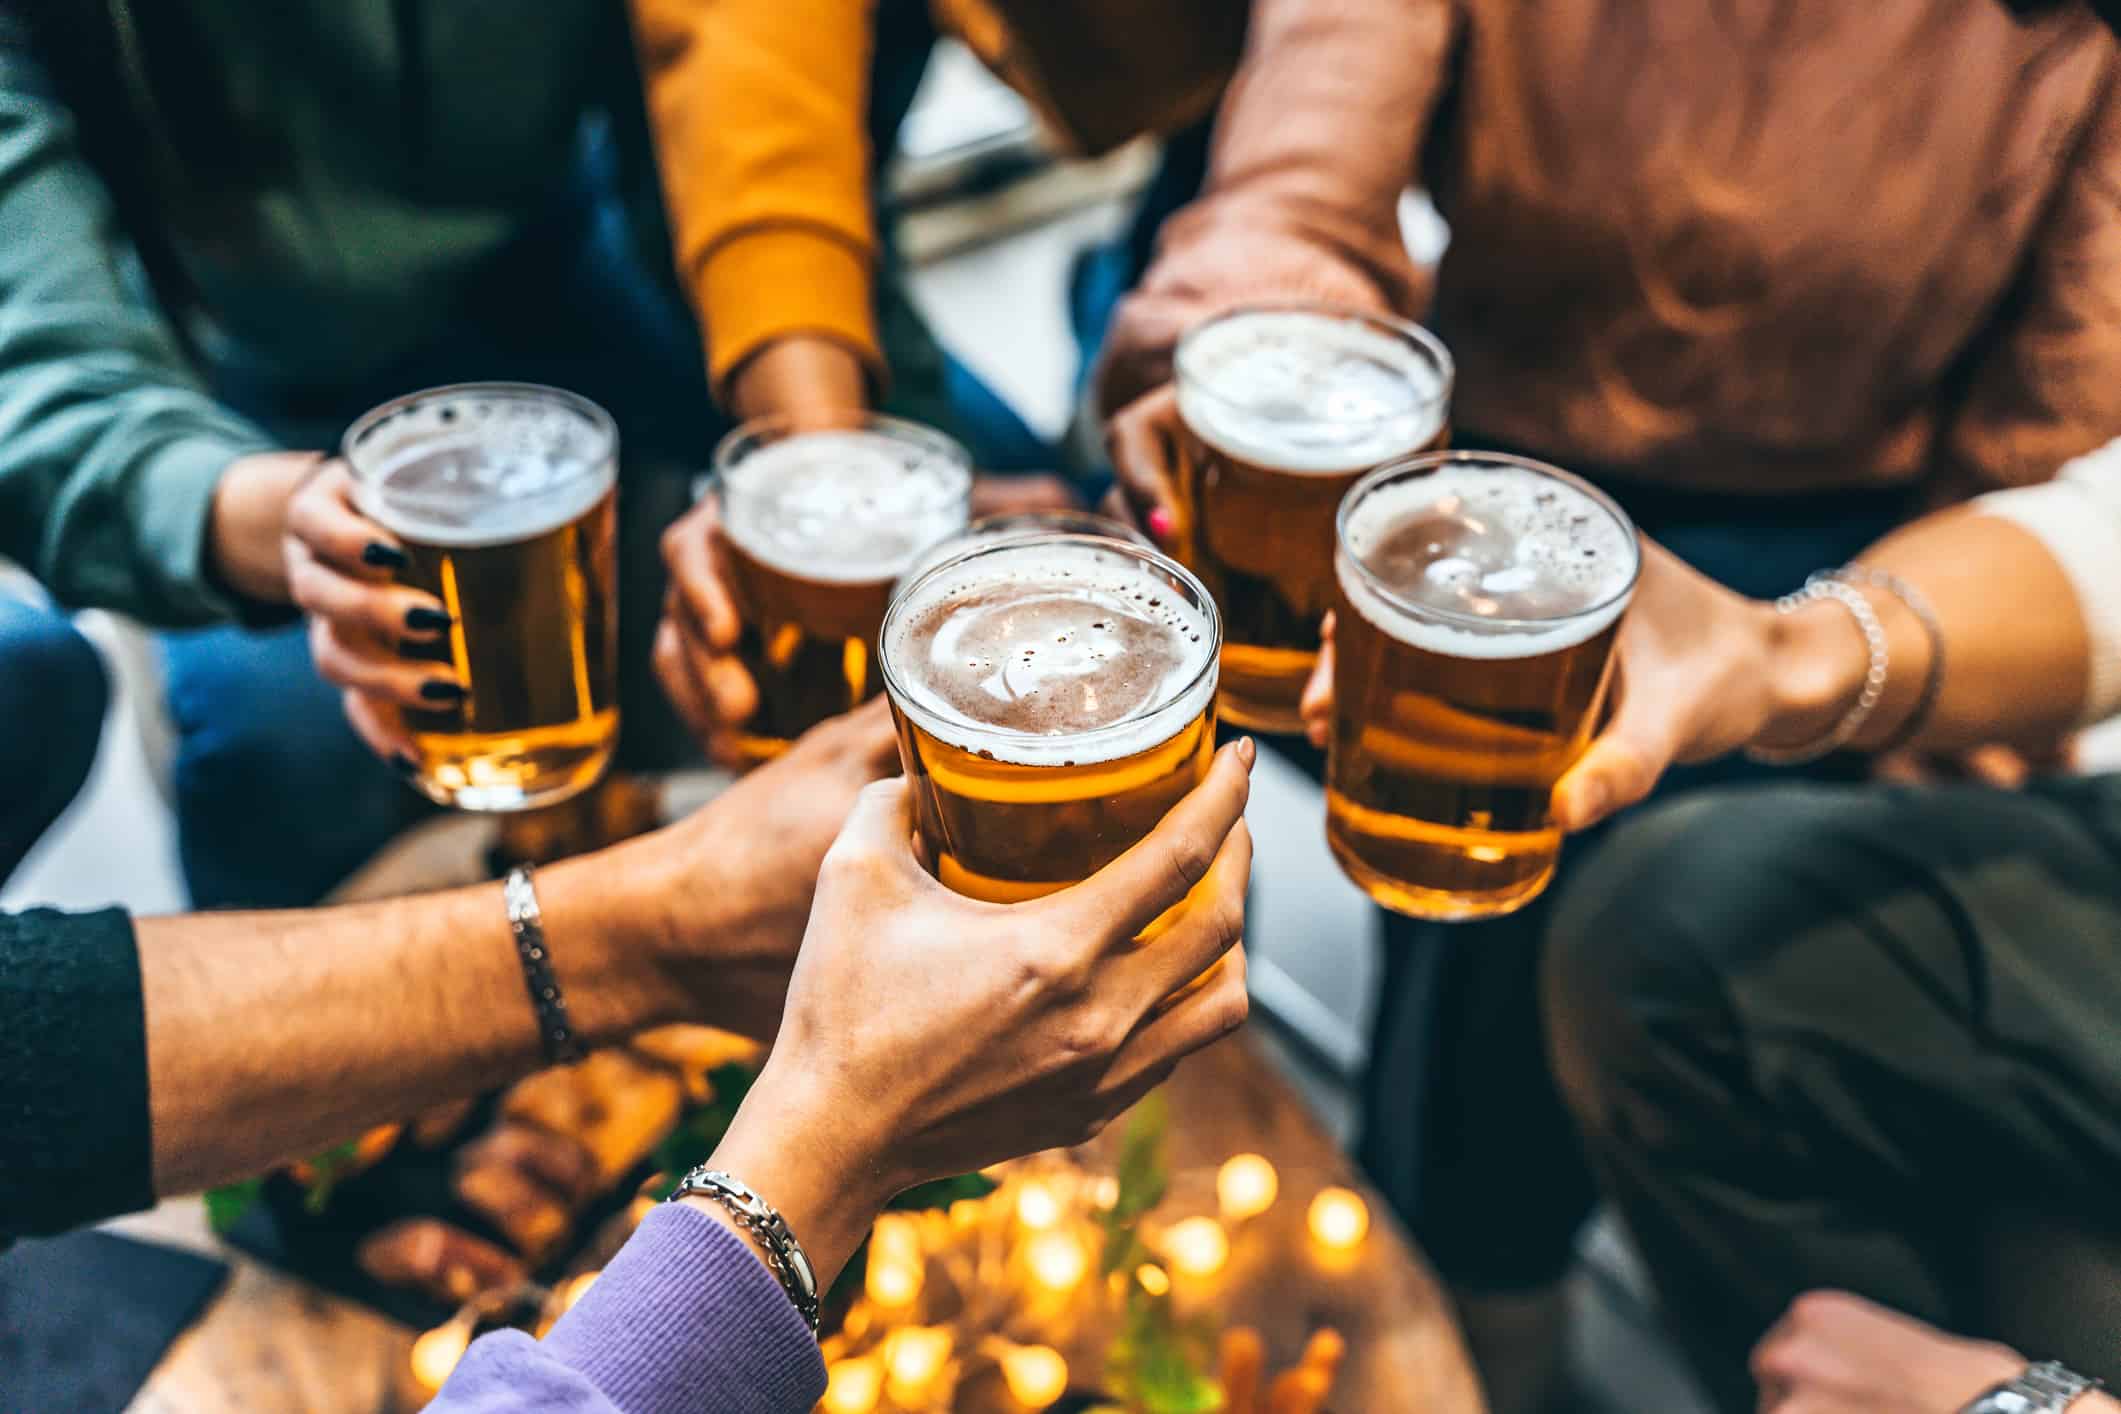 Gruppo di amici che bevono e brindano con un bicchiere di birra al ristorante pub birreria - Gente multirazziale felice che si gode l'happy hour con una pinta seduta al tavolo del bar - Concetto di stile di vita di cibi e bevande per giovani